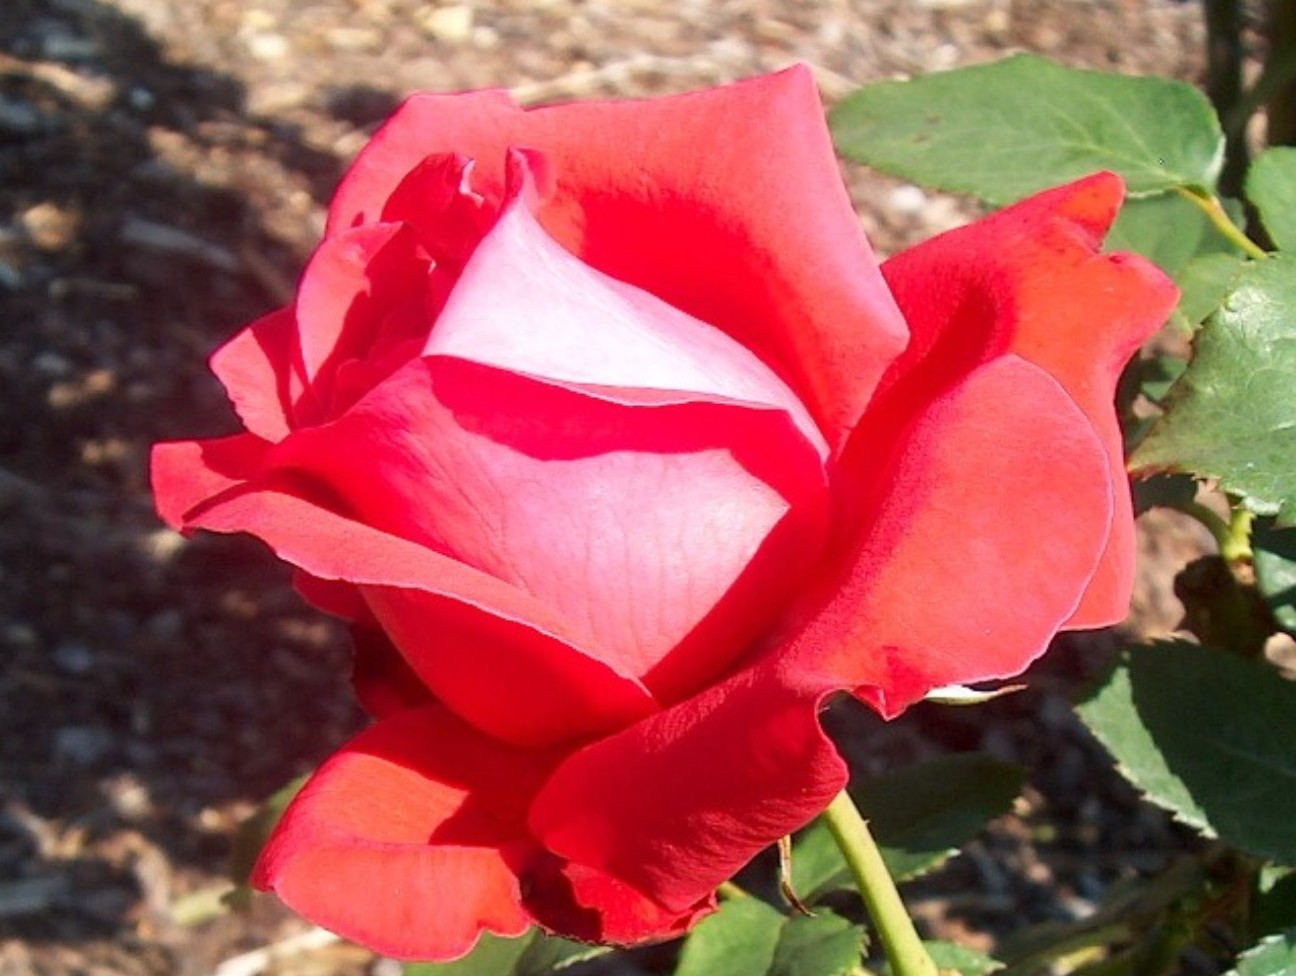 Rosa 'Alec's Red'  / Alec's Red Rose